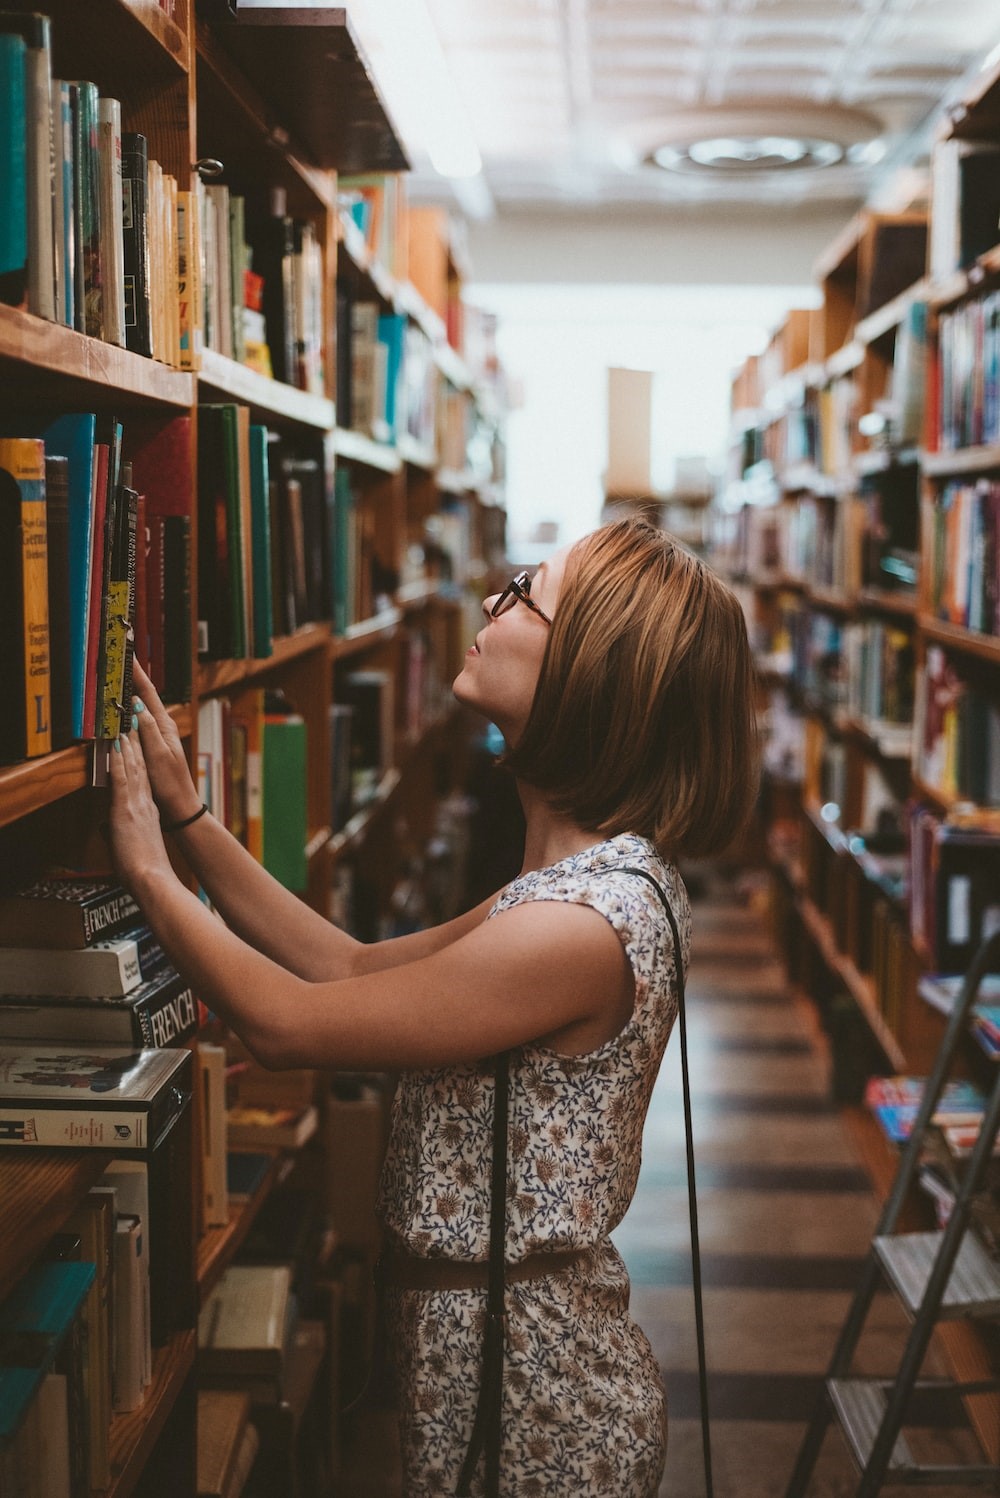 Nainen seisoo kirjastossa kirjoja täynnä olevien hyllyjen välissä ja etsii hyllyltä jotain, katse käännettynä ylöspäin, kuvakulma sivusta, kädet nojaavat hyllyn reunaan, naisella silmälasit päässään.